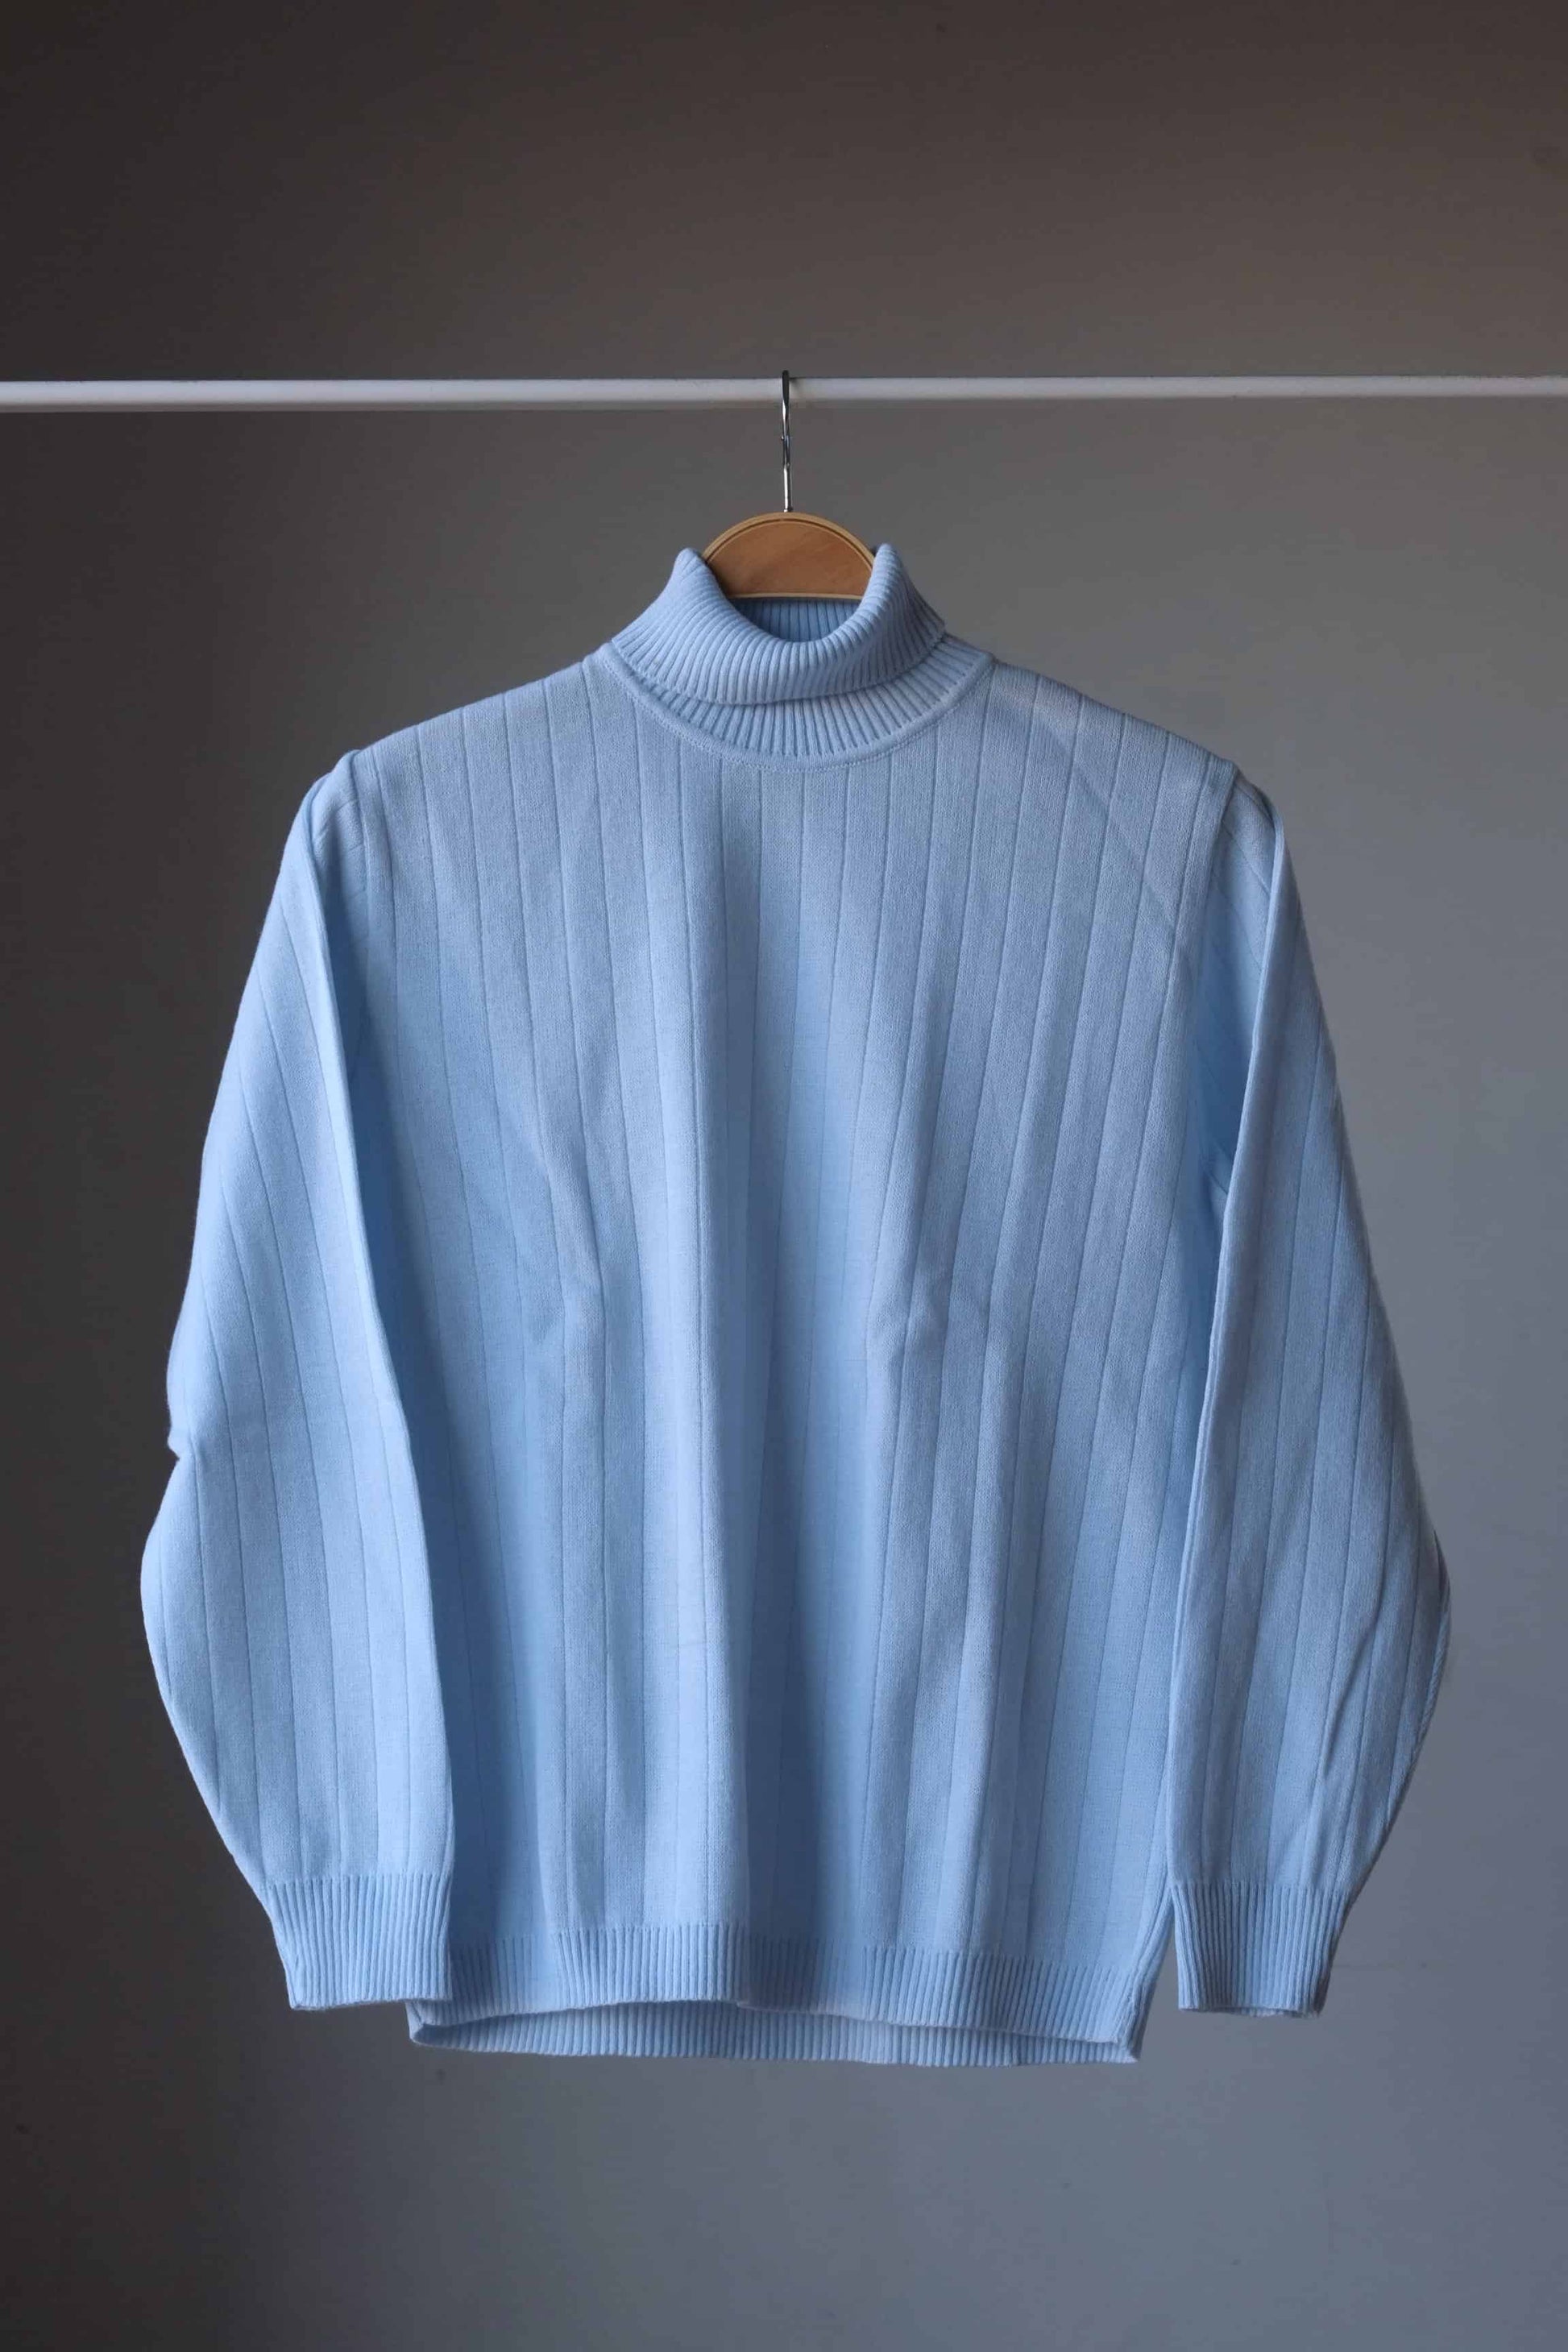 Vintage 70's Turtleneck Sweater light blue